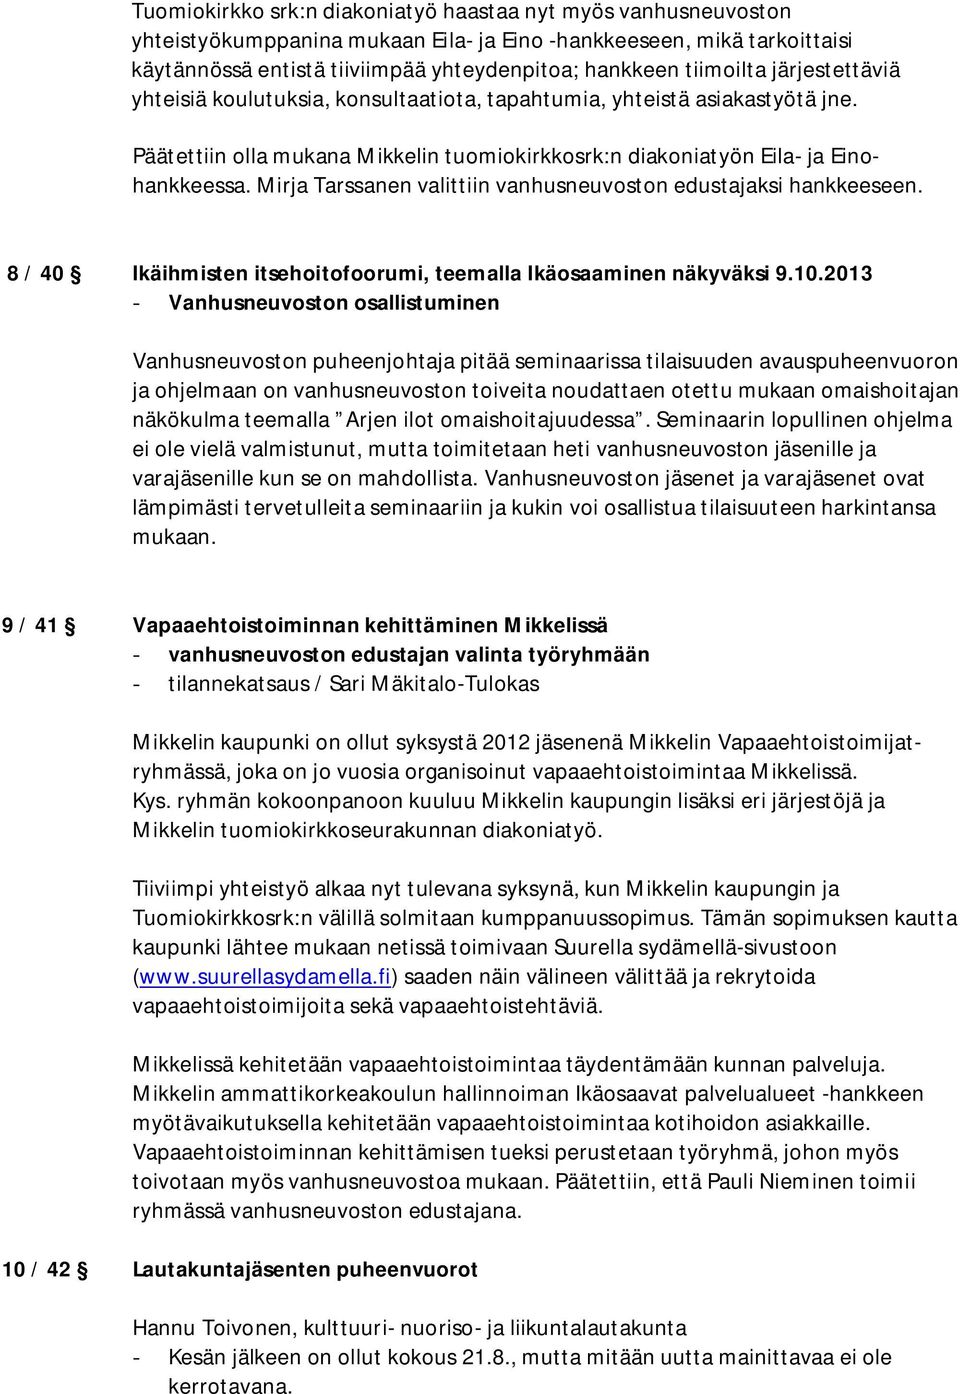 Mirja Tarssanen valittiin vanhusneuvoston edustajaksi hankkeeseen. 8 / 40 Ikäihmisten itsehoitofoorumi, teemalla Ikäosaaminen näkyväksi 9.10.